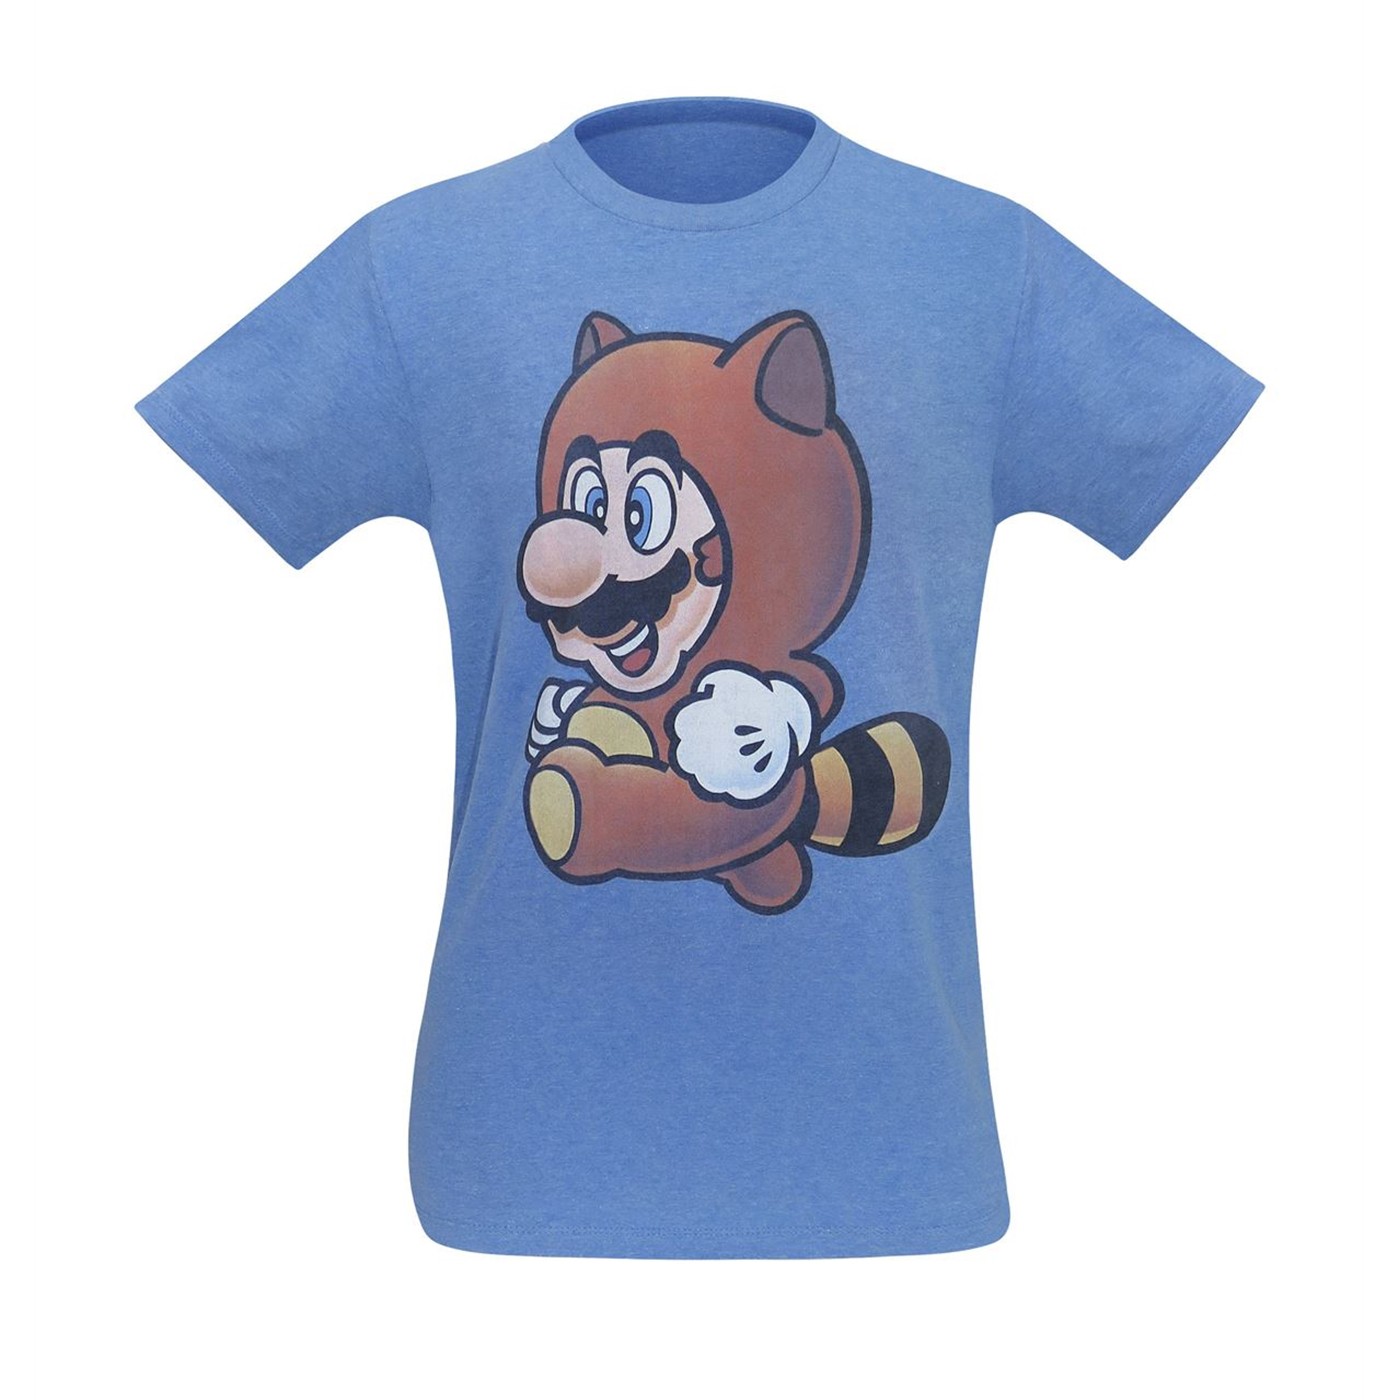 Super Mario 3 Tanooki Mario Men's T-Shirt